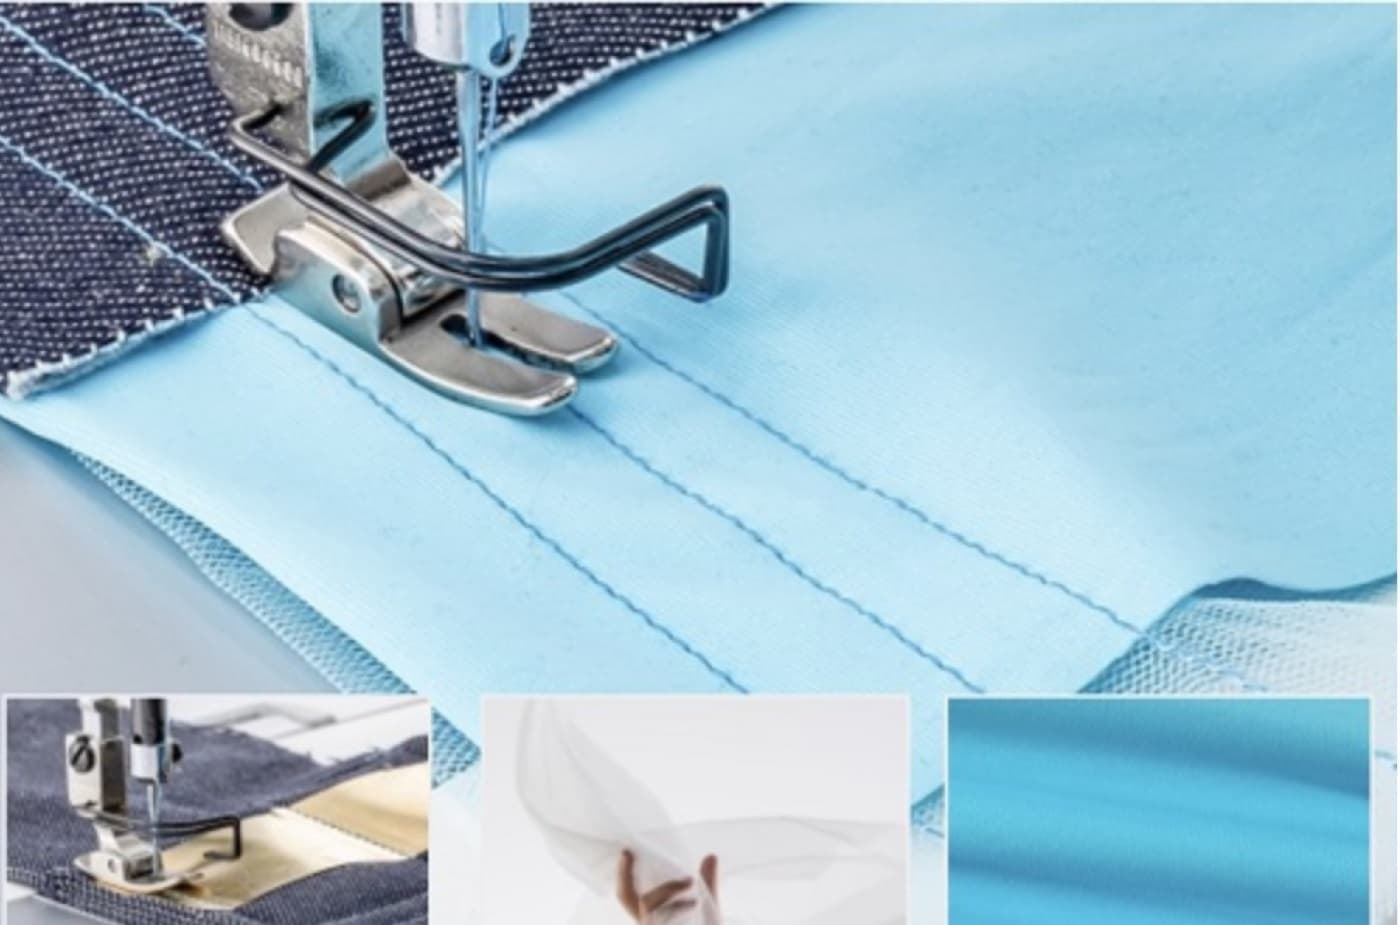 JACK A5E-AMH CON INTELIGENCIA ARTIFICIAL - Máquina de coser industrial puntada recta - Imagen 7